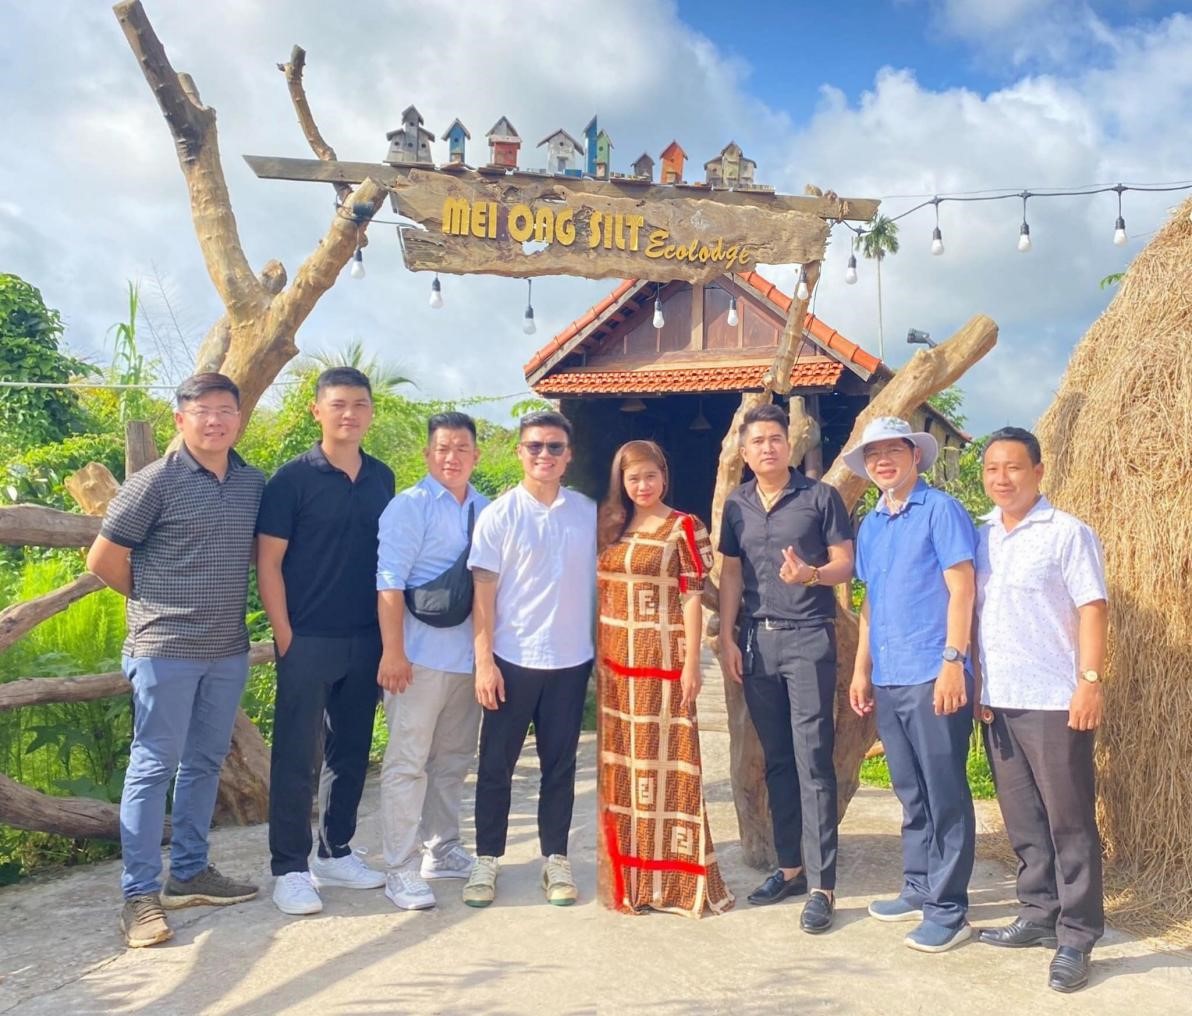 Mekong Silt Ecolodge: Chốn bình yên níu chân du khách!